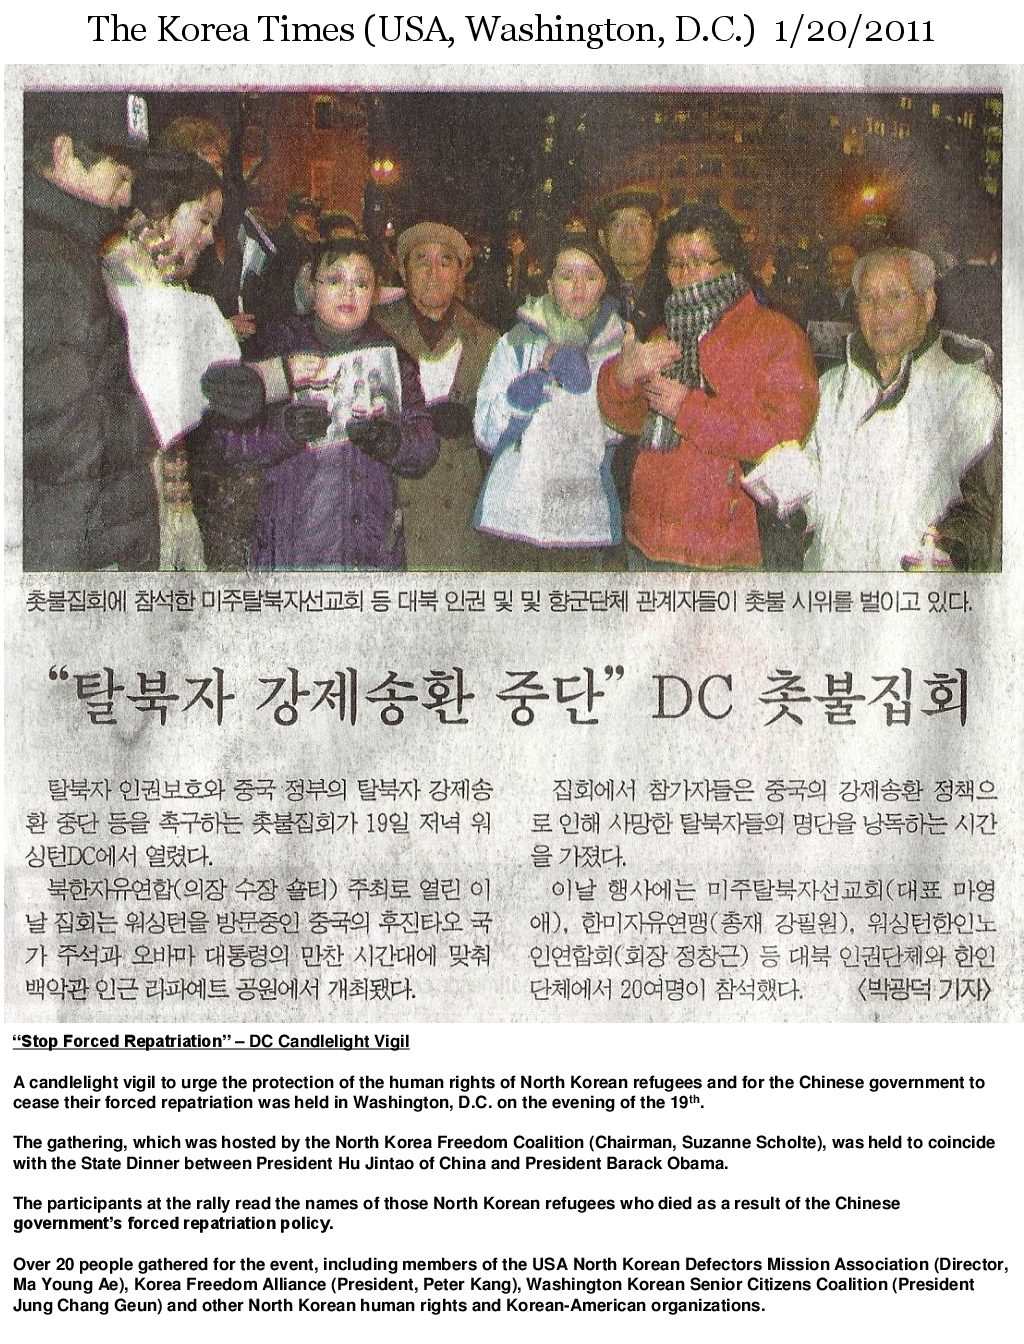 korean articles in hangul on sensory meltdown